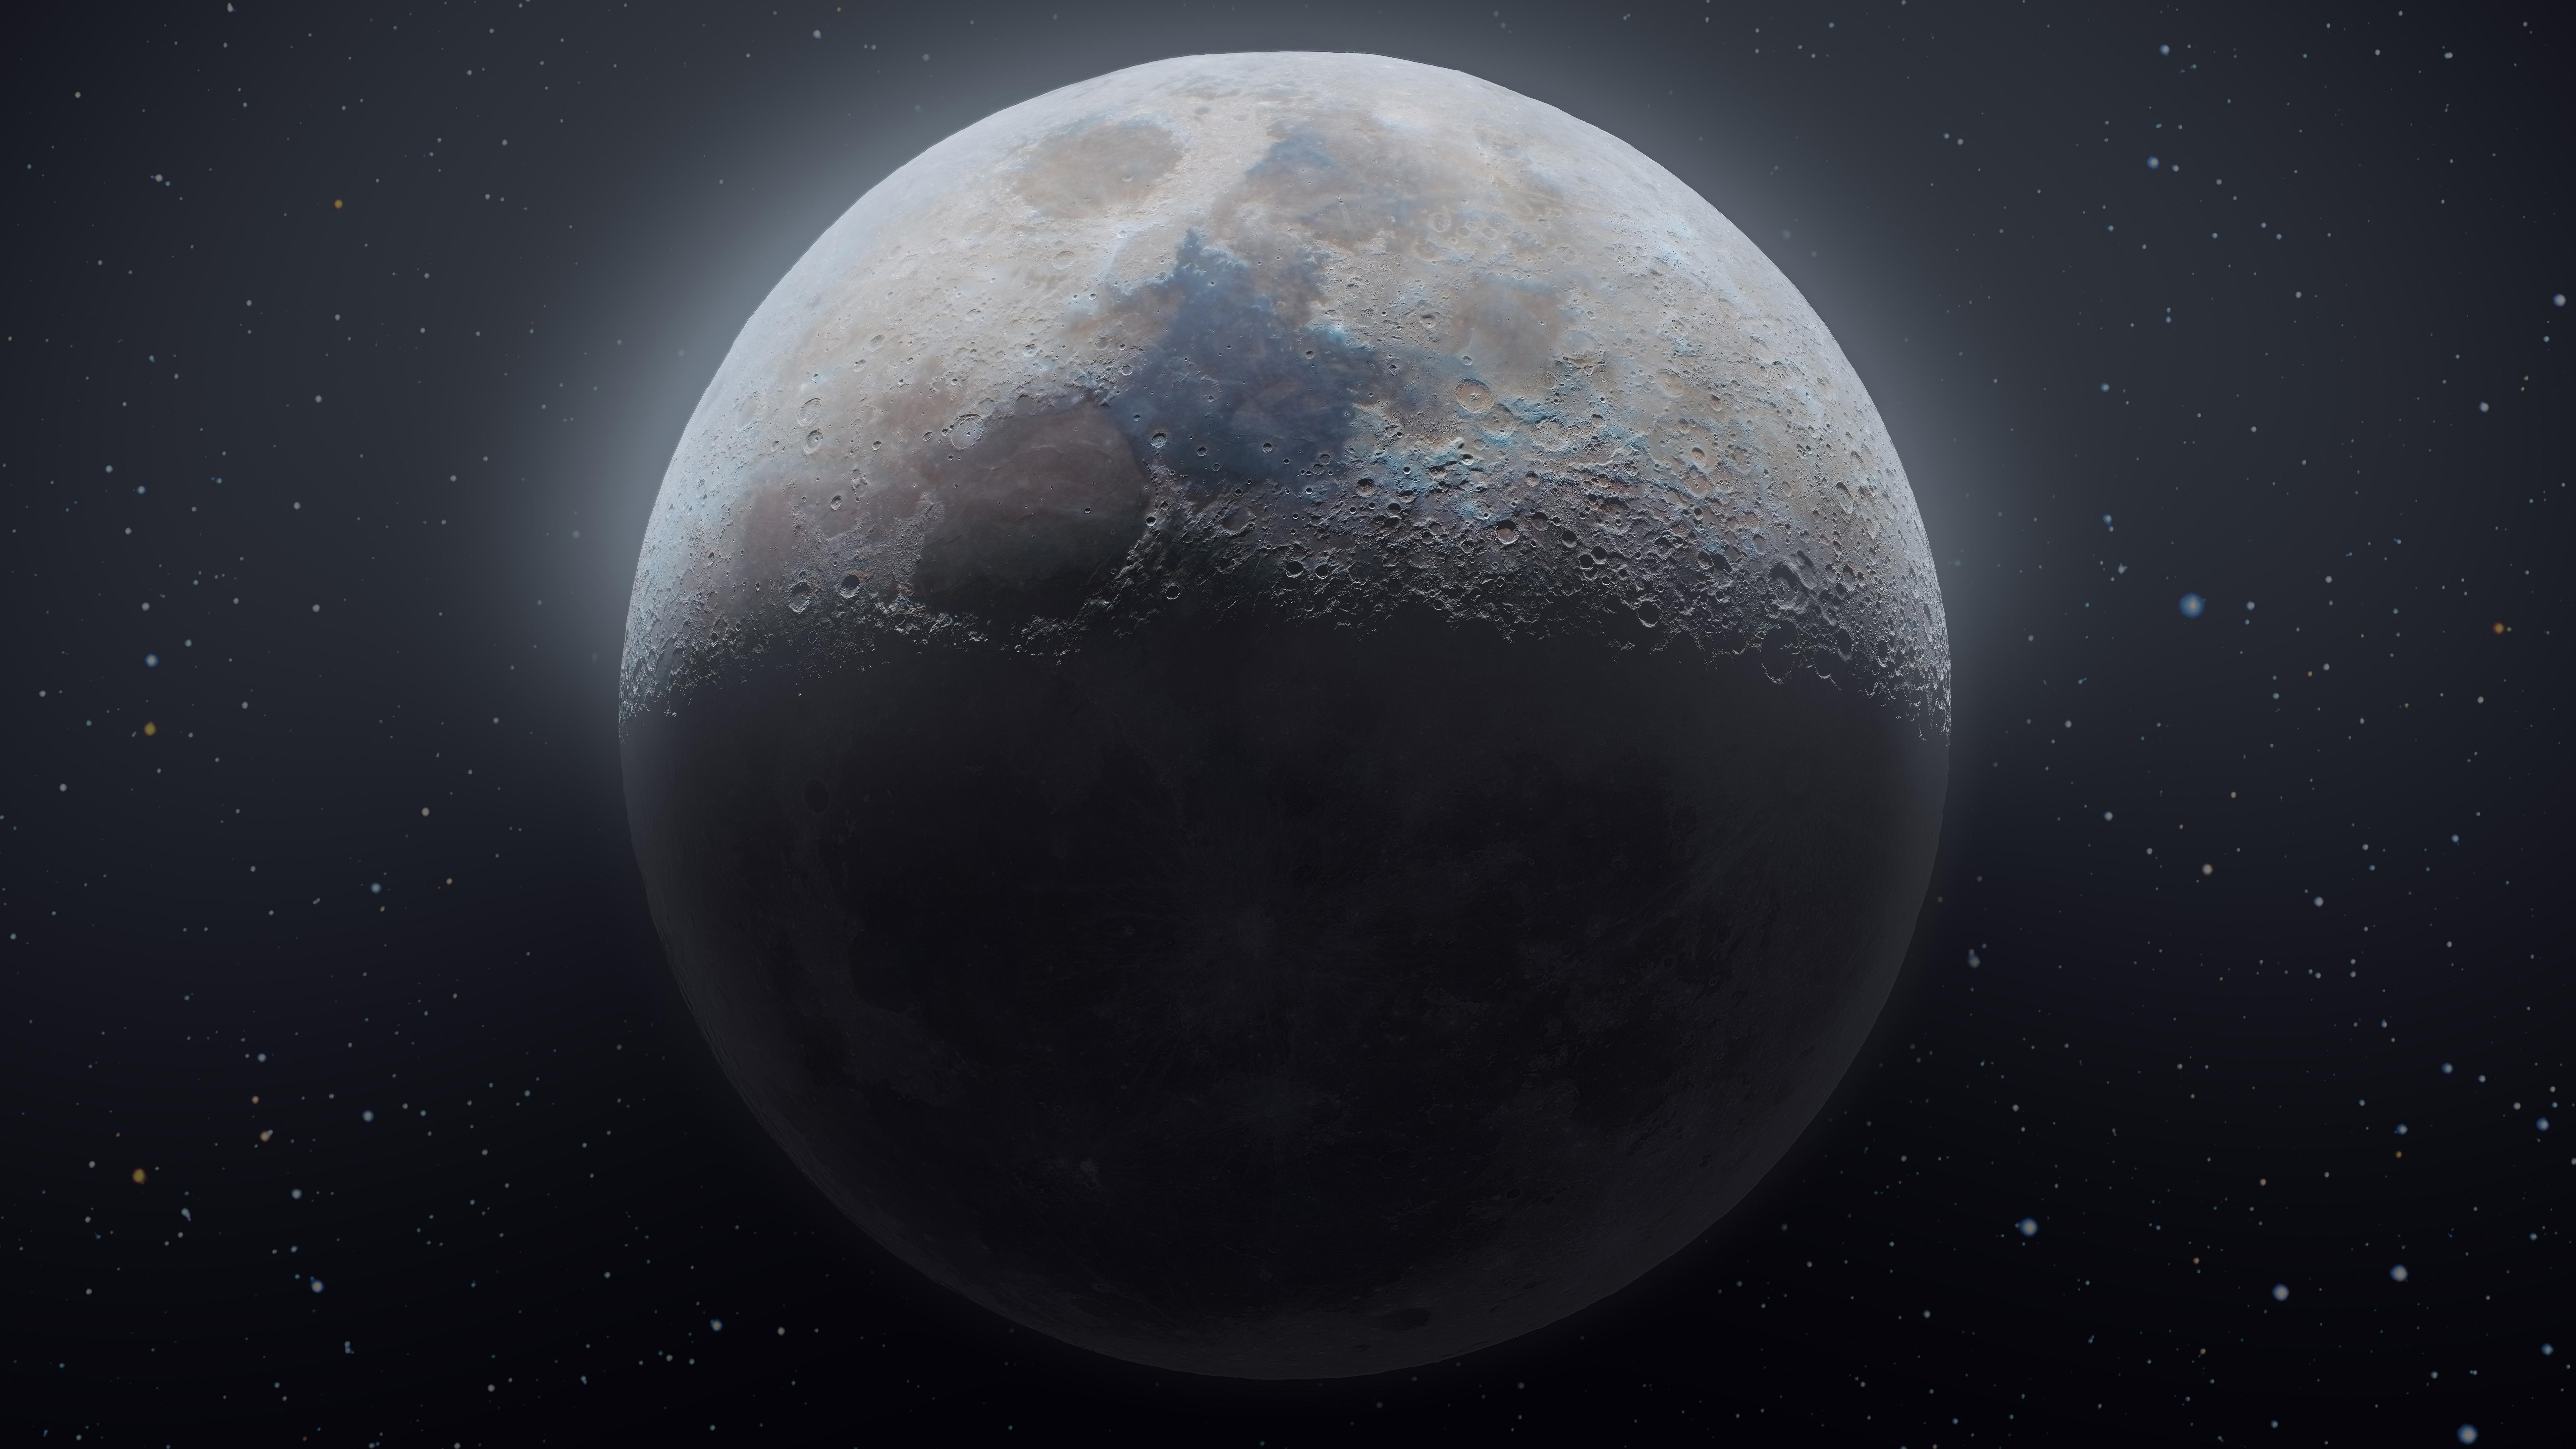 Moon 8k Ultra HD Wallpaper by Andrew McCarthy